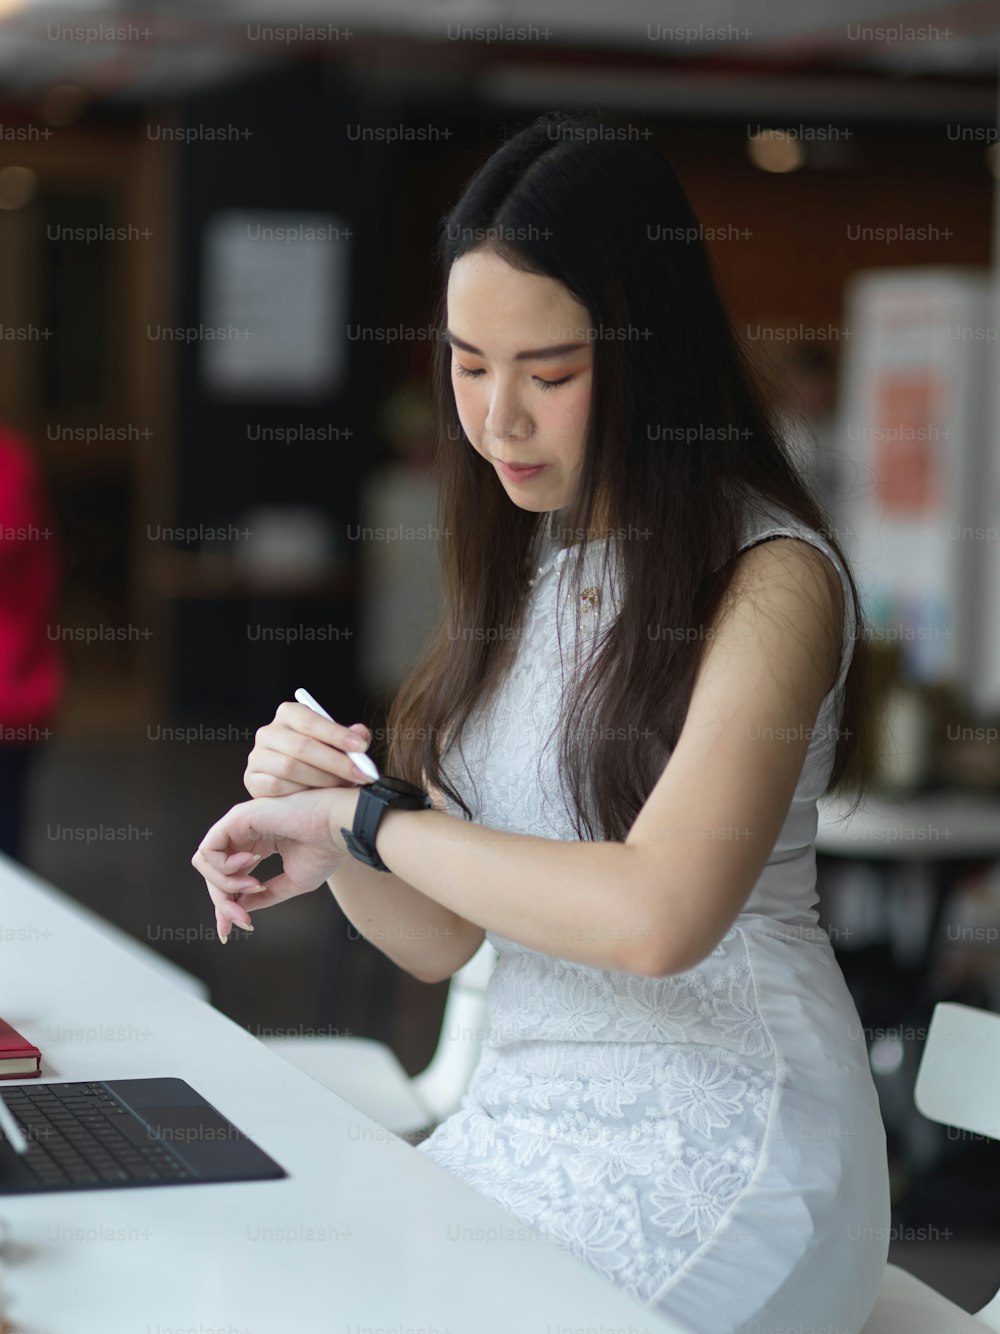 Ritratto di donna che guarda su smartwatch mentre lavora in uno spazio di coworking